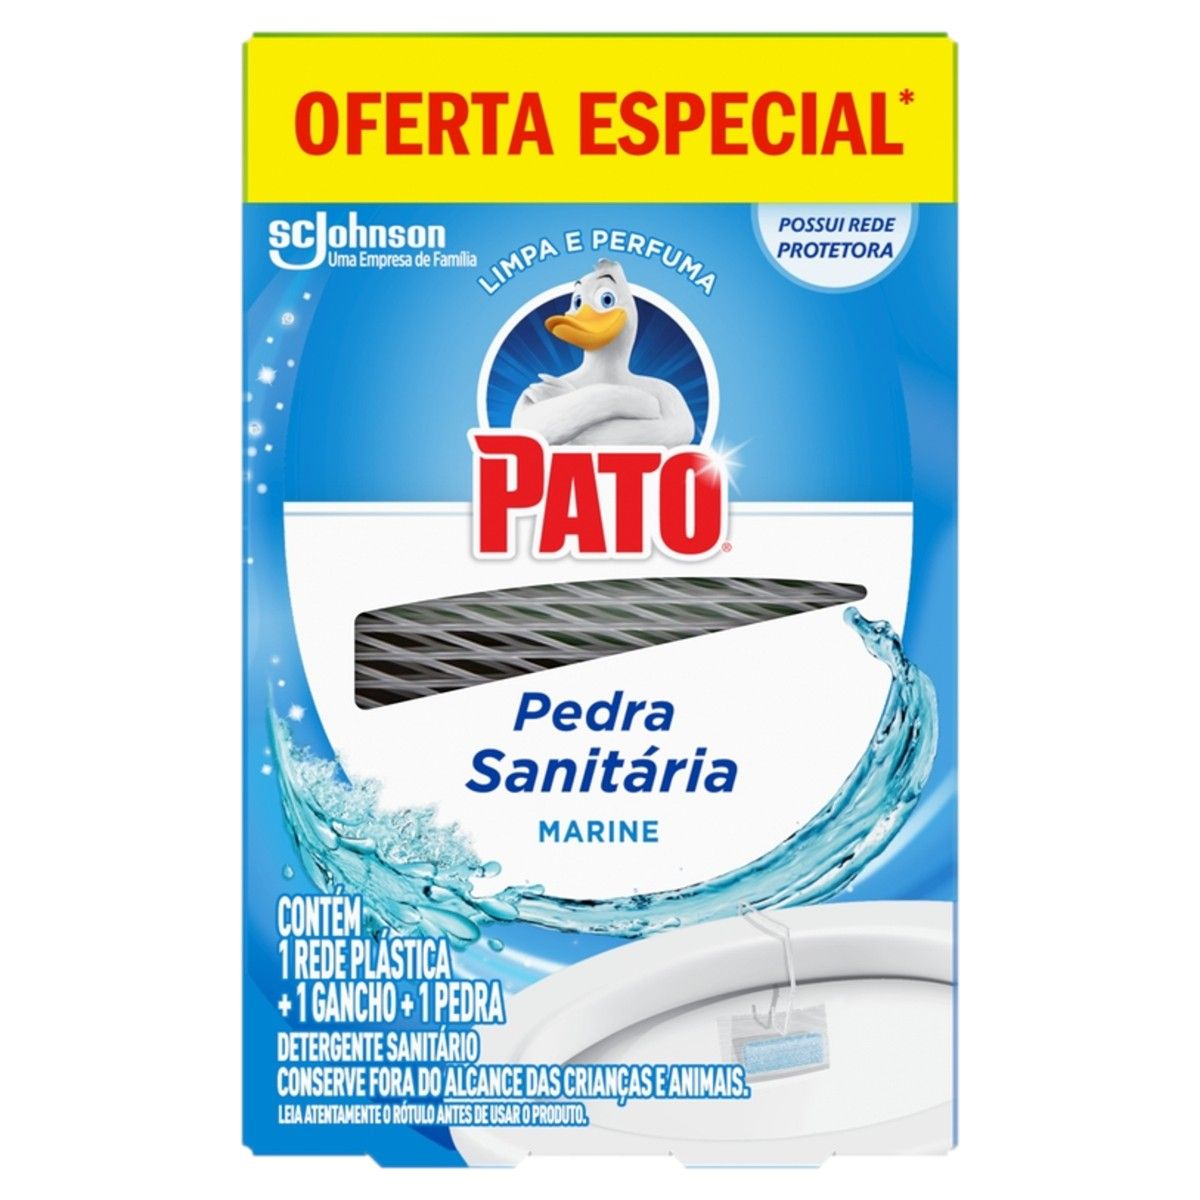 Detergente Sanitário Pedra Pato Marine Oferta Especial